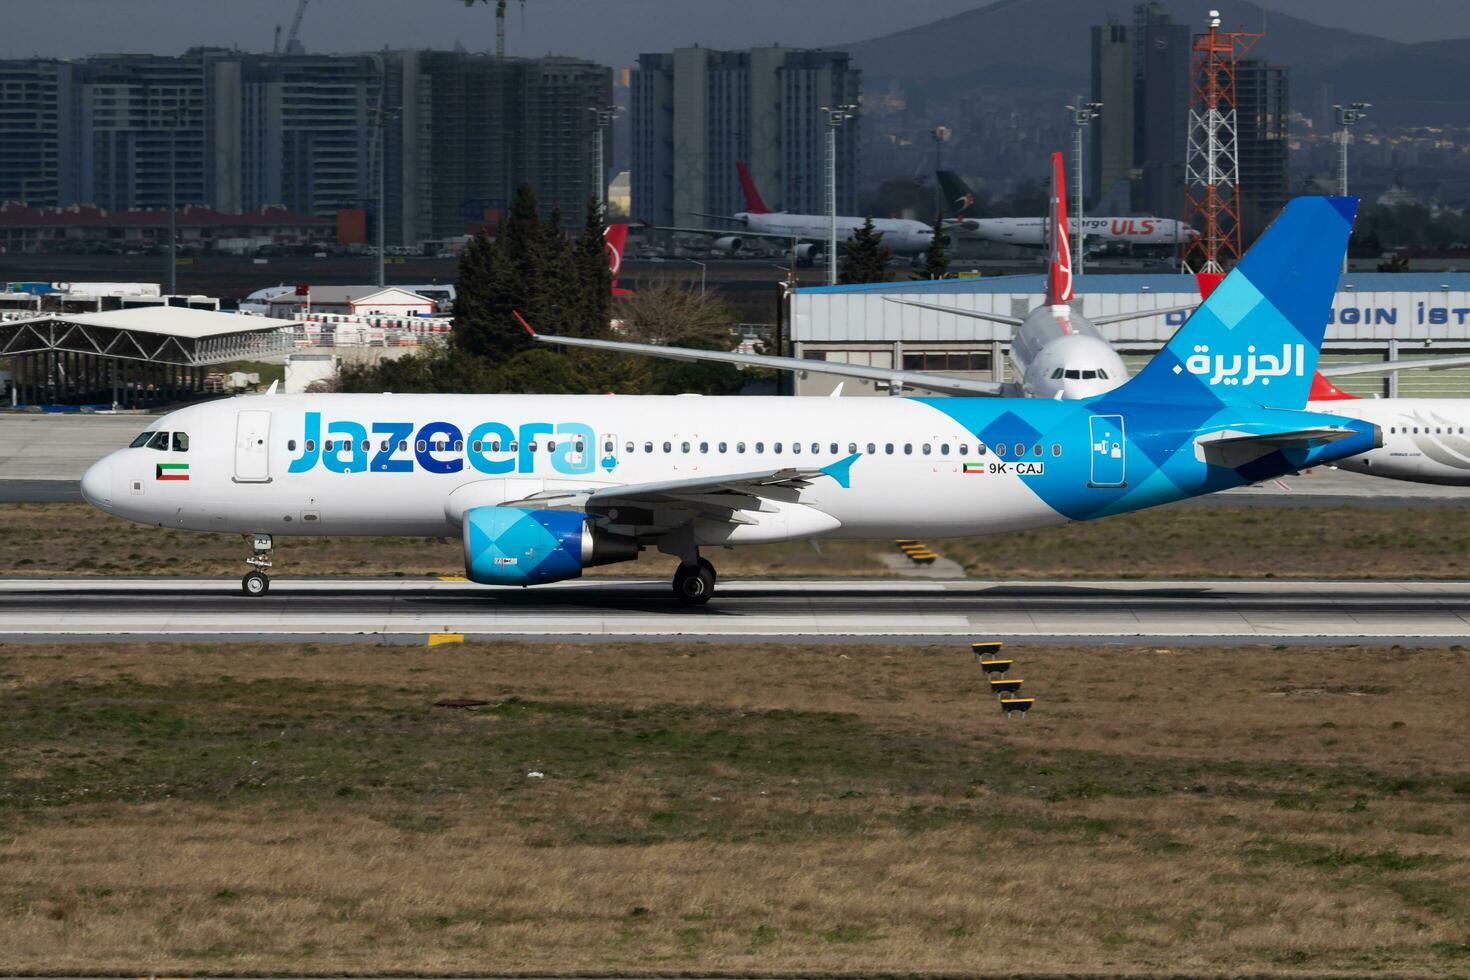 jazeera voies aériennes Airbus a320 9k-caj passager avion Départ à Istanbul atatürk aéroport photo